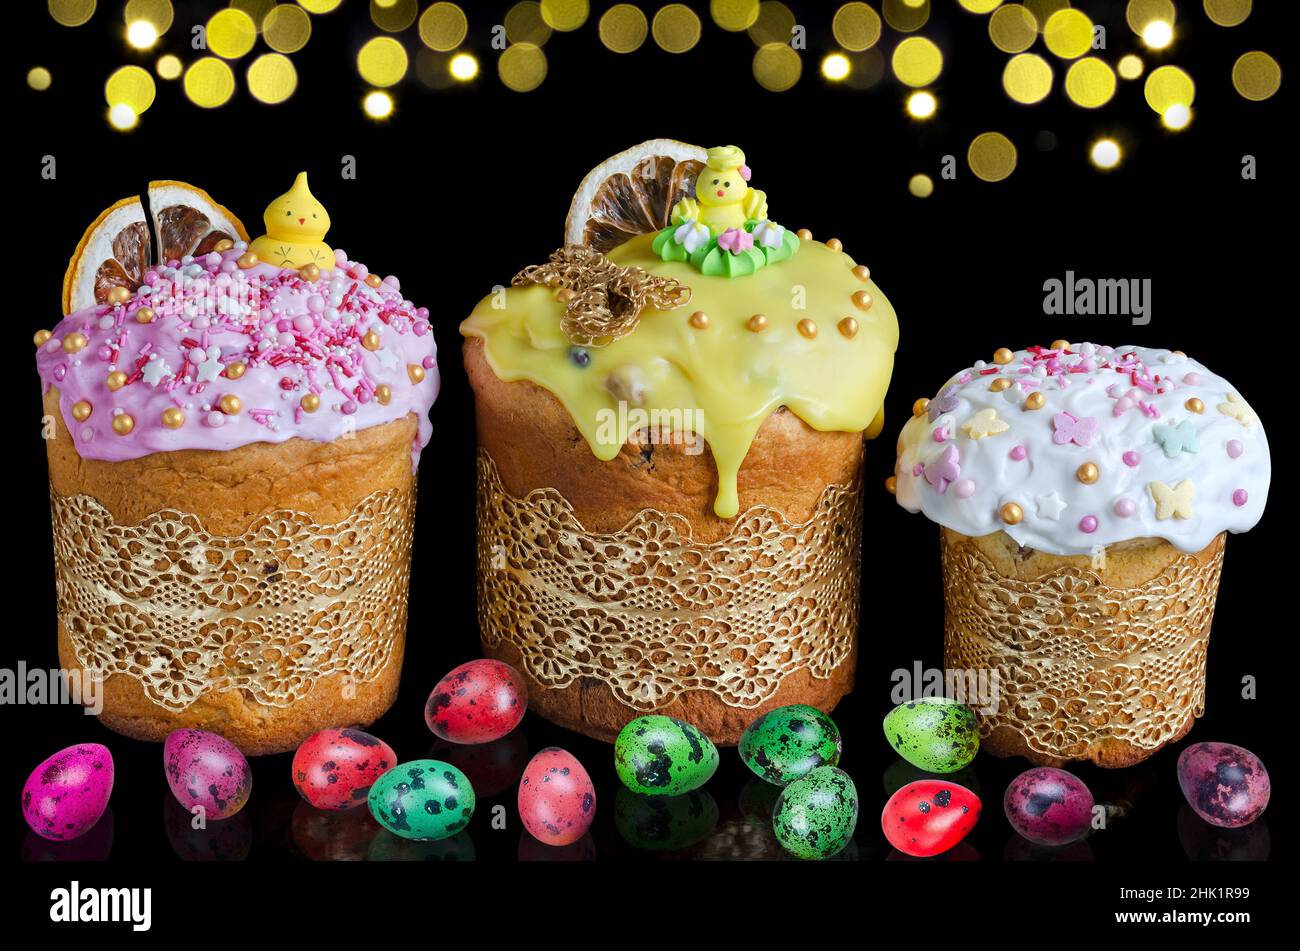 Gâteaux de Pâques décorés et œufs de caille colorés sur fond noir horizontal avec bokeh doré.Le concept de Pâques lumineuses Banque D'Images